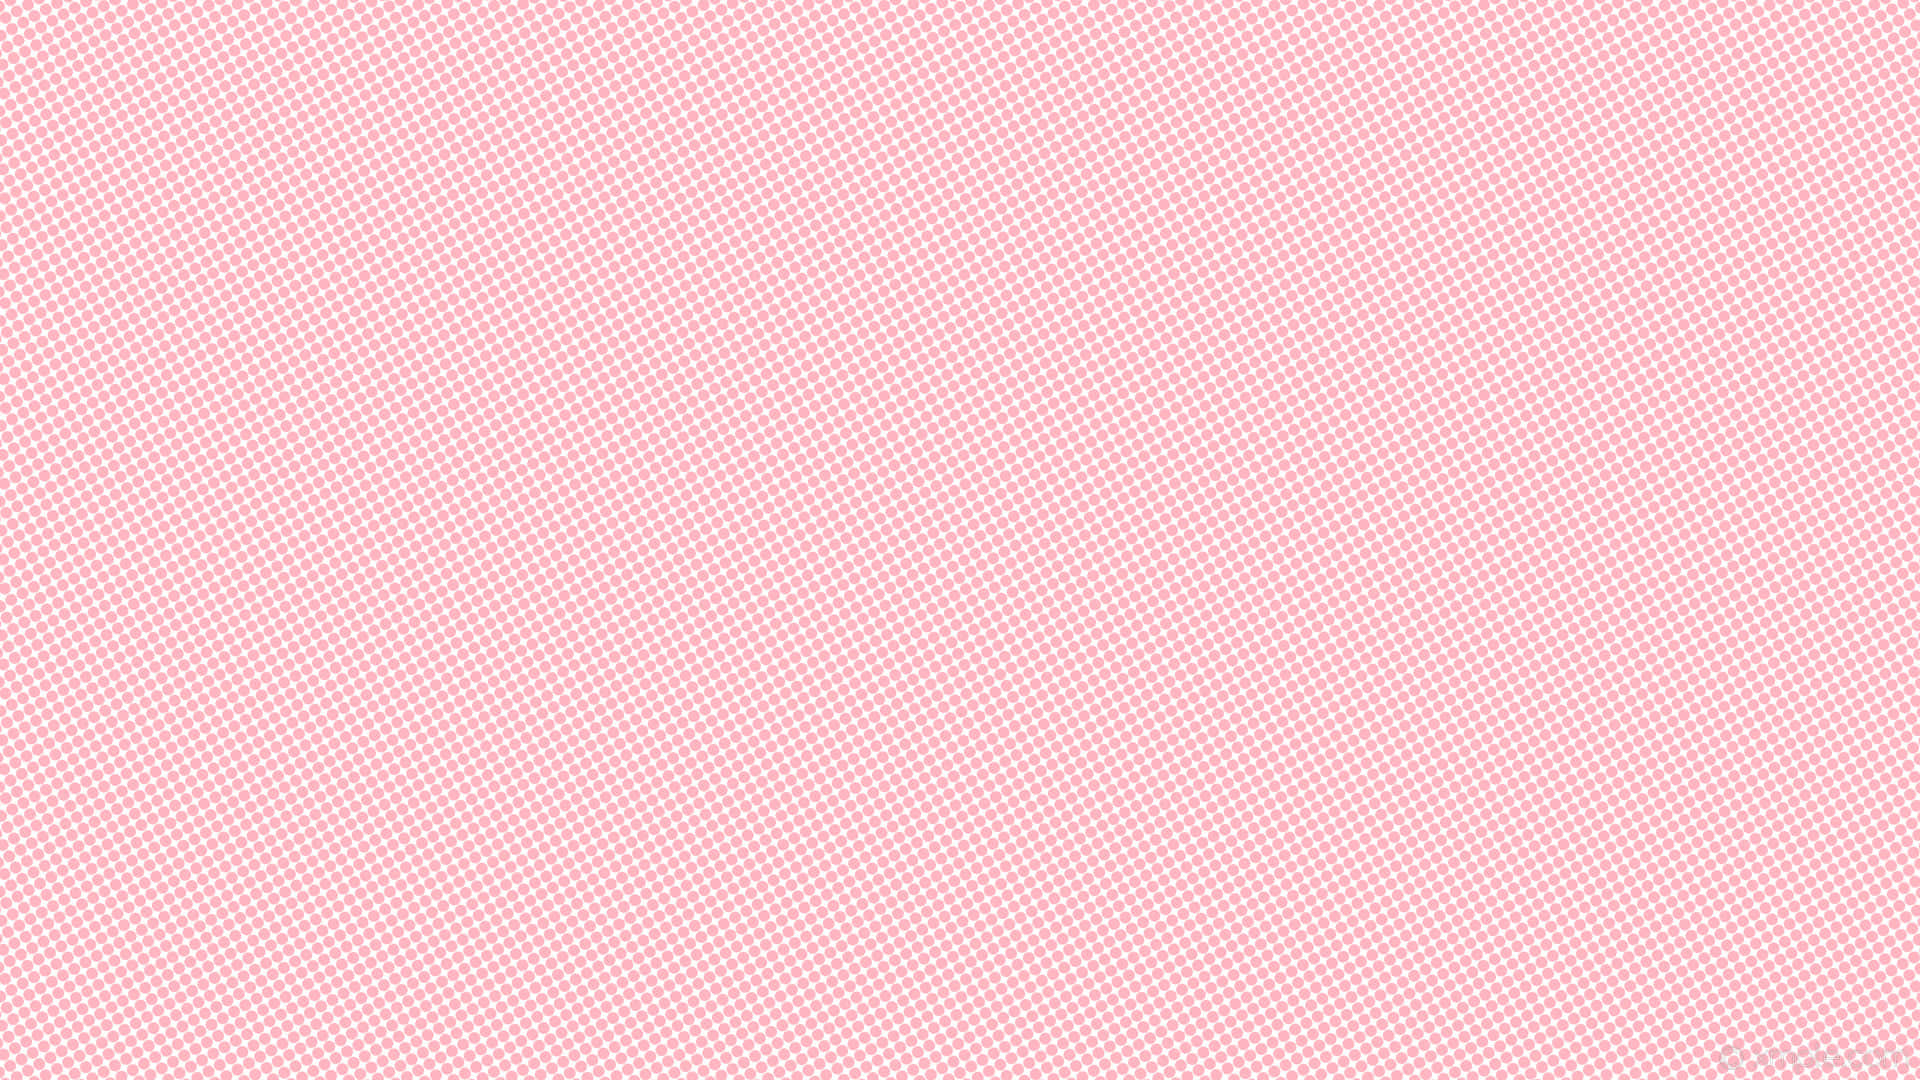 Hình nền màu hồng đơn sắc miễn phí là một lựa chọn tuyệt vời để làm nổi bật thiết bị của bạn. Với sắc hồng đầy tươi sáng và thanh lịch, giờ đây bạn đã có thể tải xuống hàng loạt những hình nền độc đáo và miễn phí.